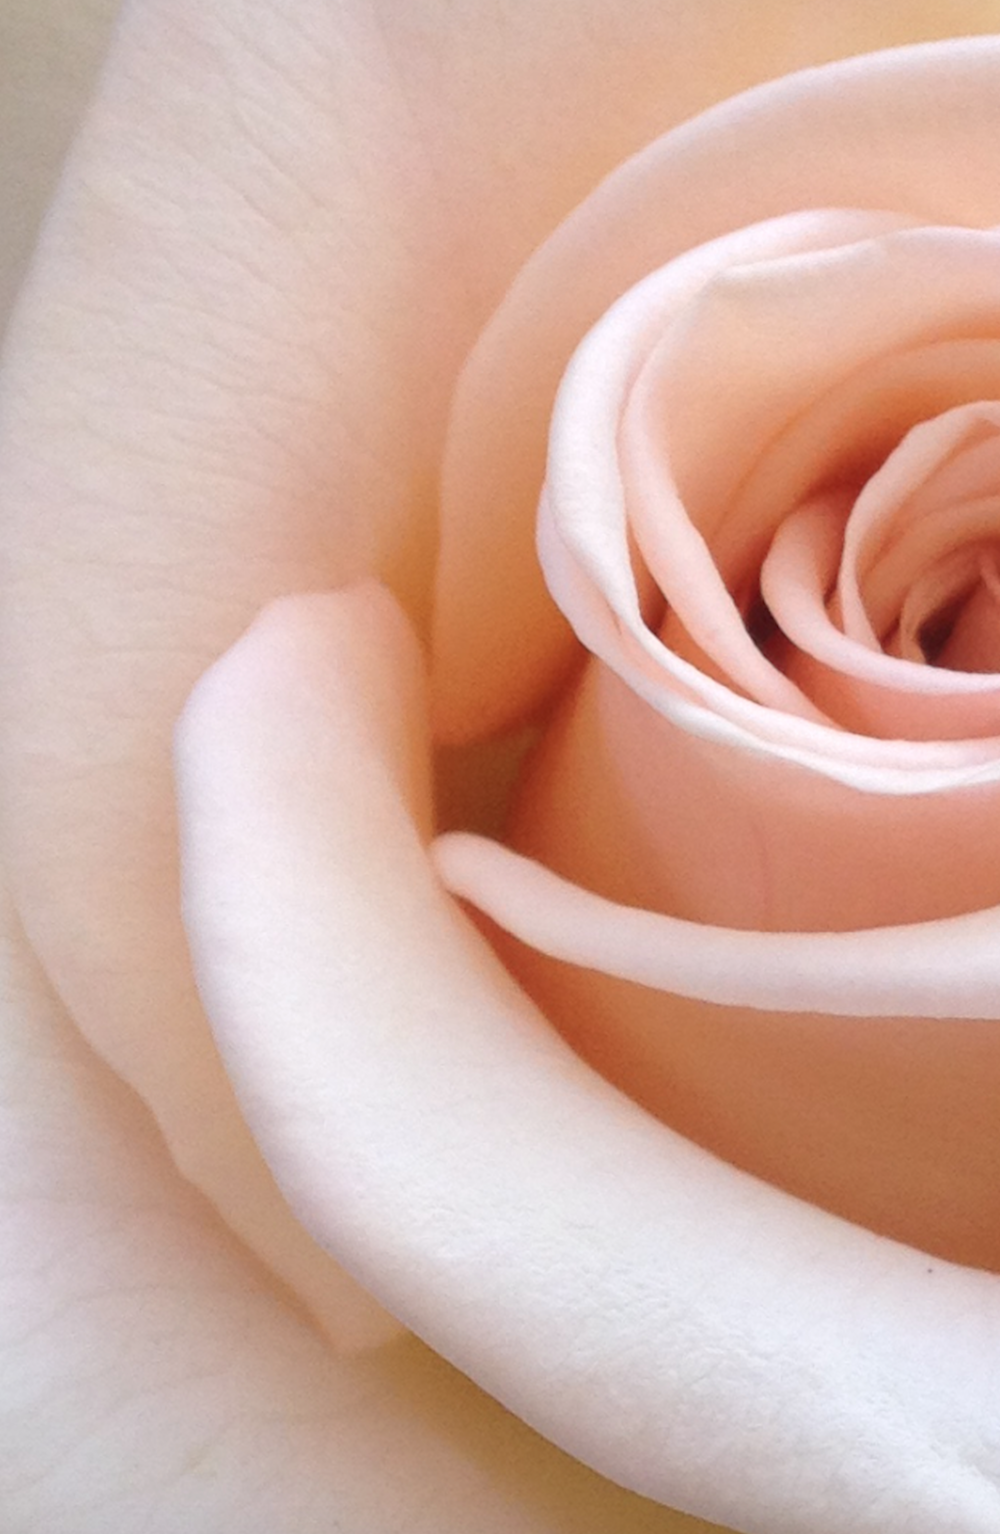 flor de rosa blanca